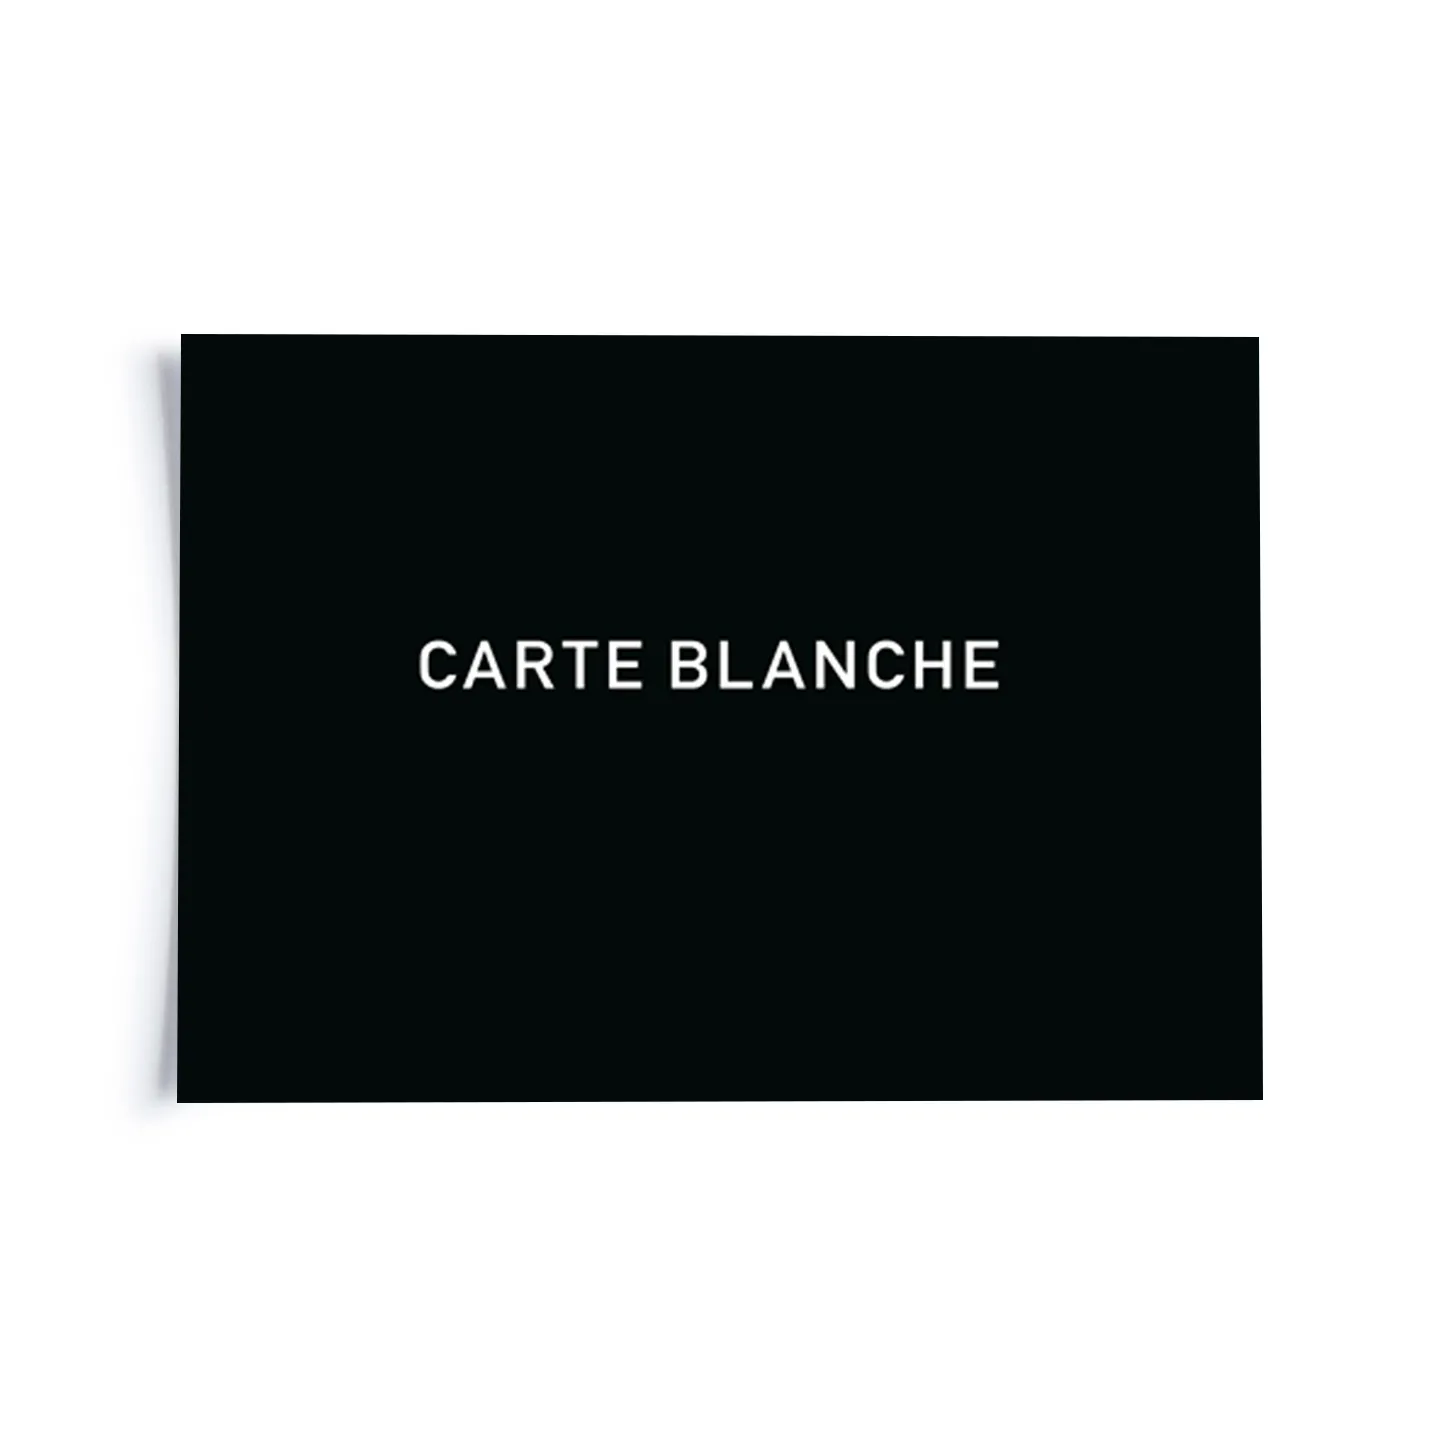 Carte blanche - Fidea Design GmbH